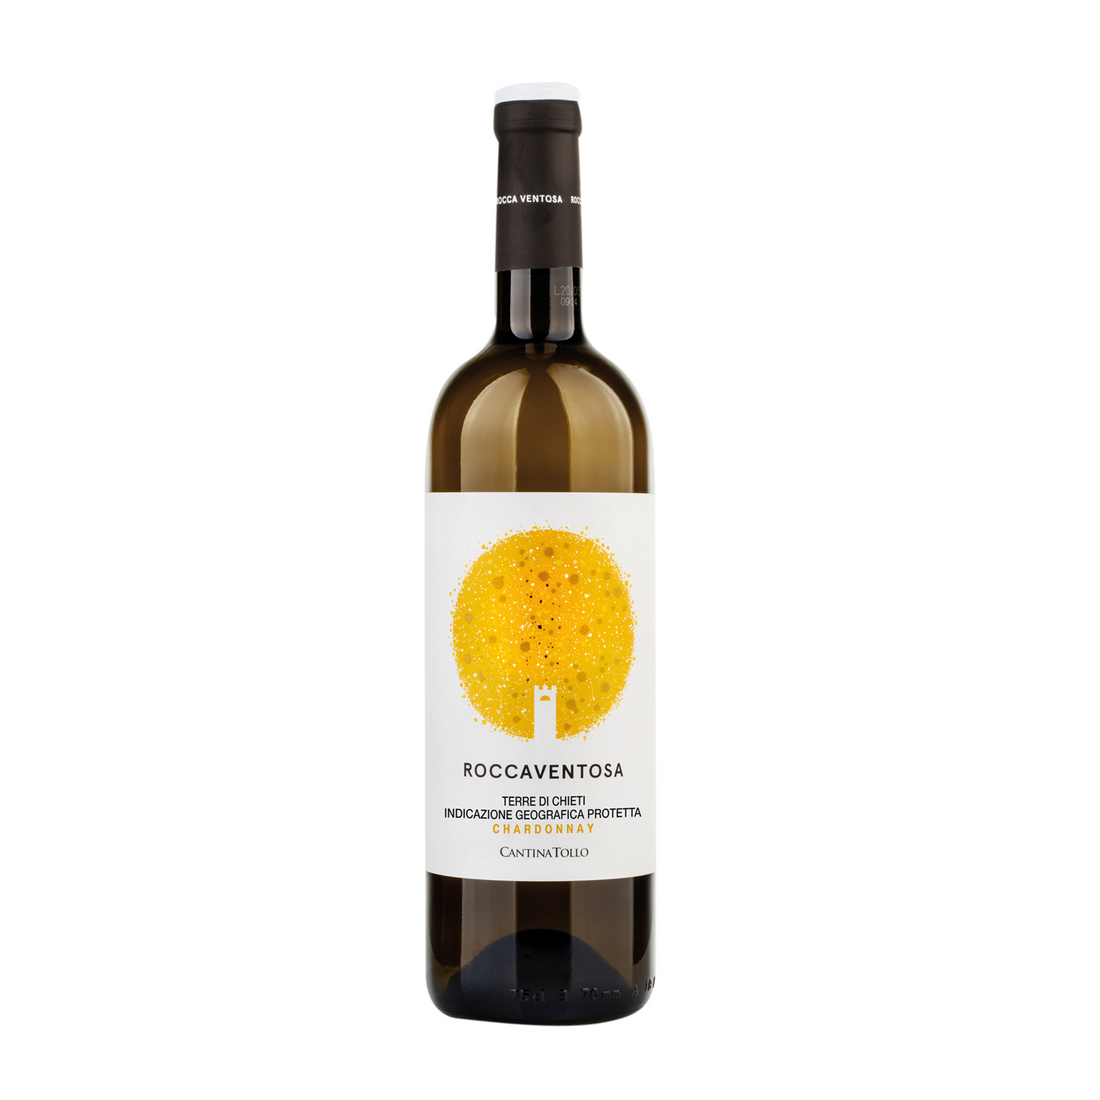 Rocca Ventosa Chardonnay Terre Di Chieti IGP, 750mL